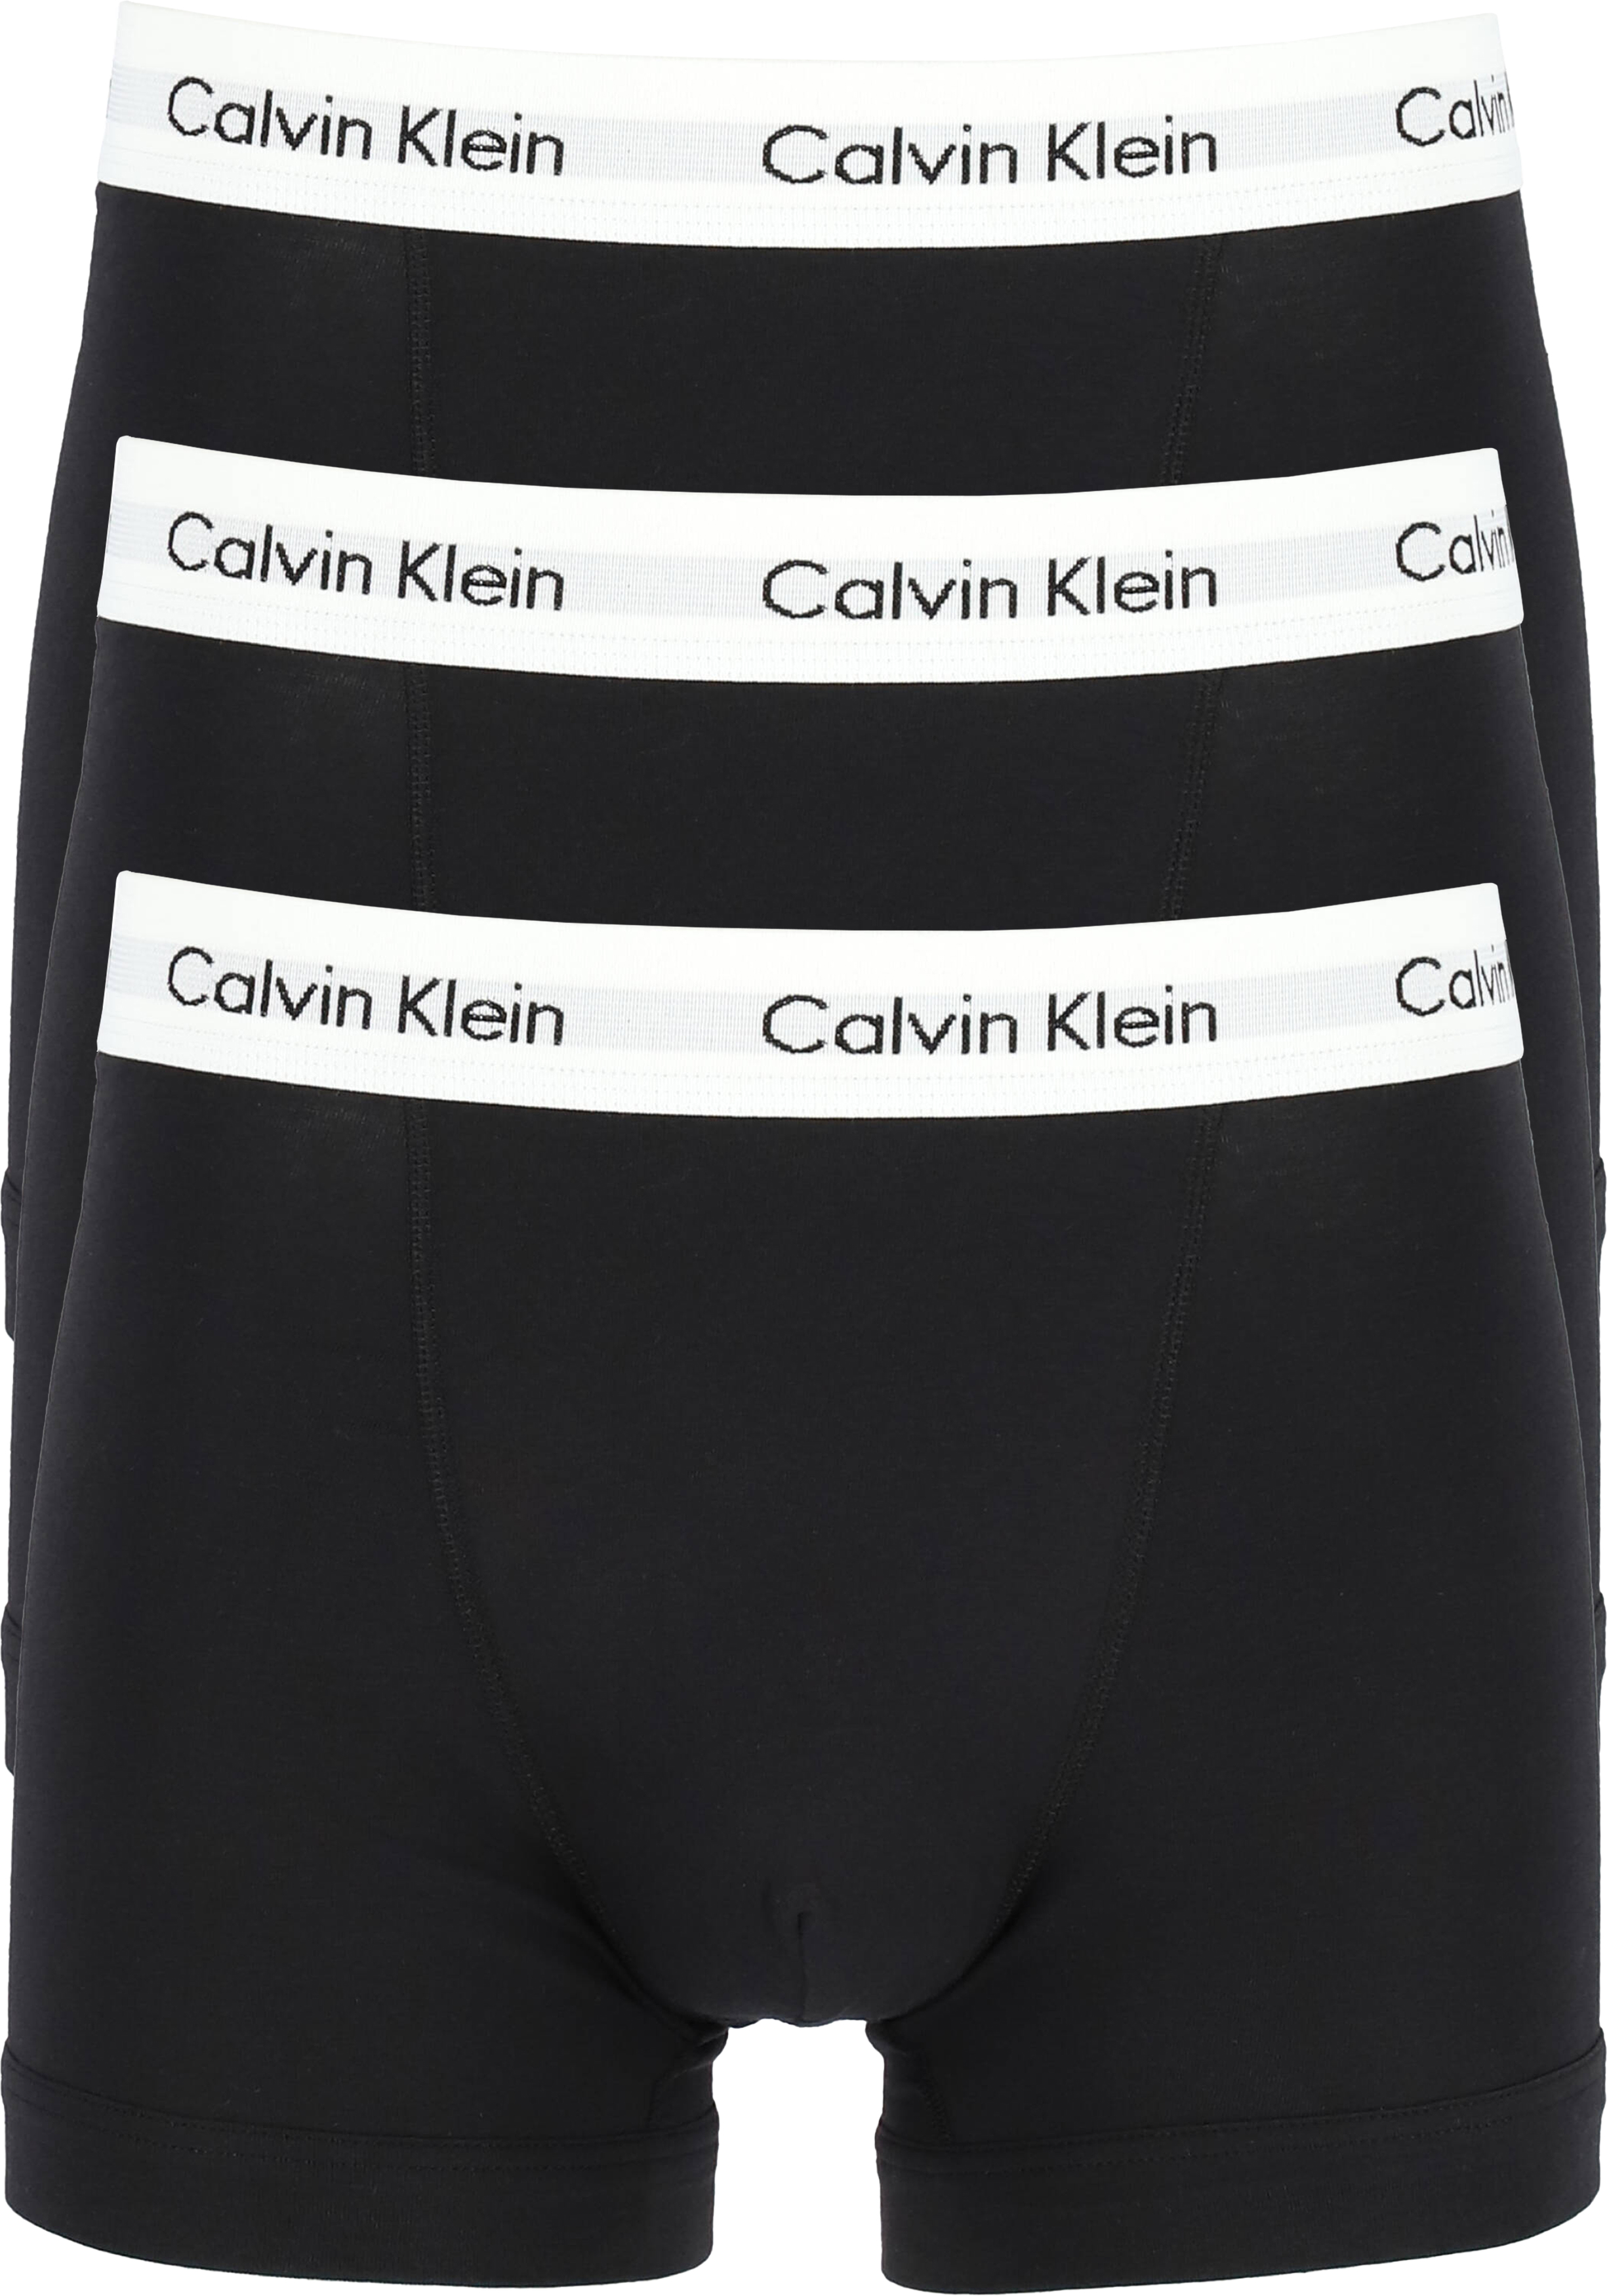 heet Moderator Stevig Calvin Klein Trunks (3-pack), zwart - Gratis bezorgd